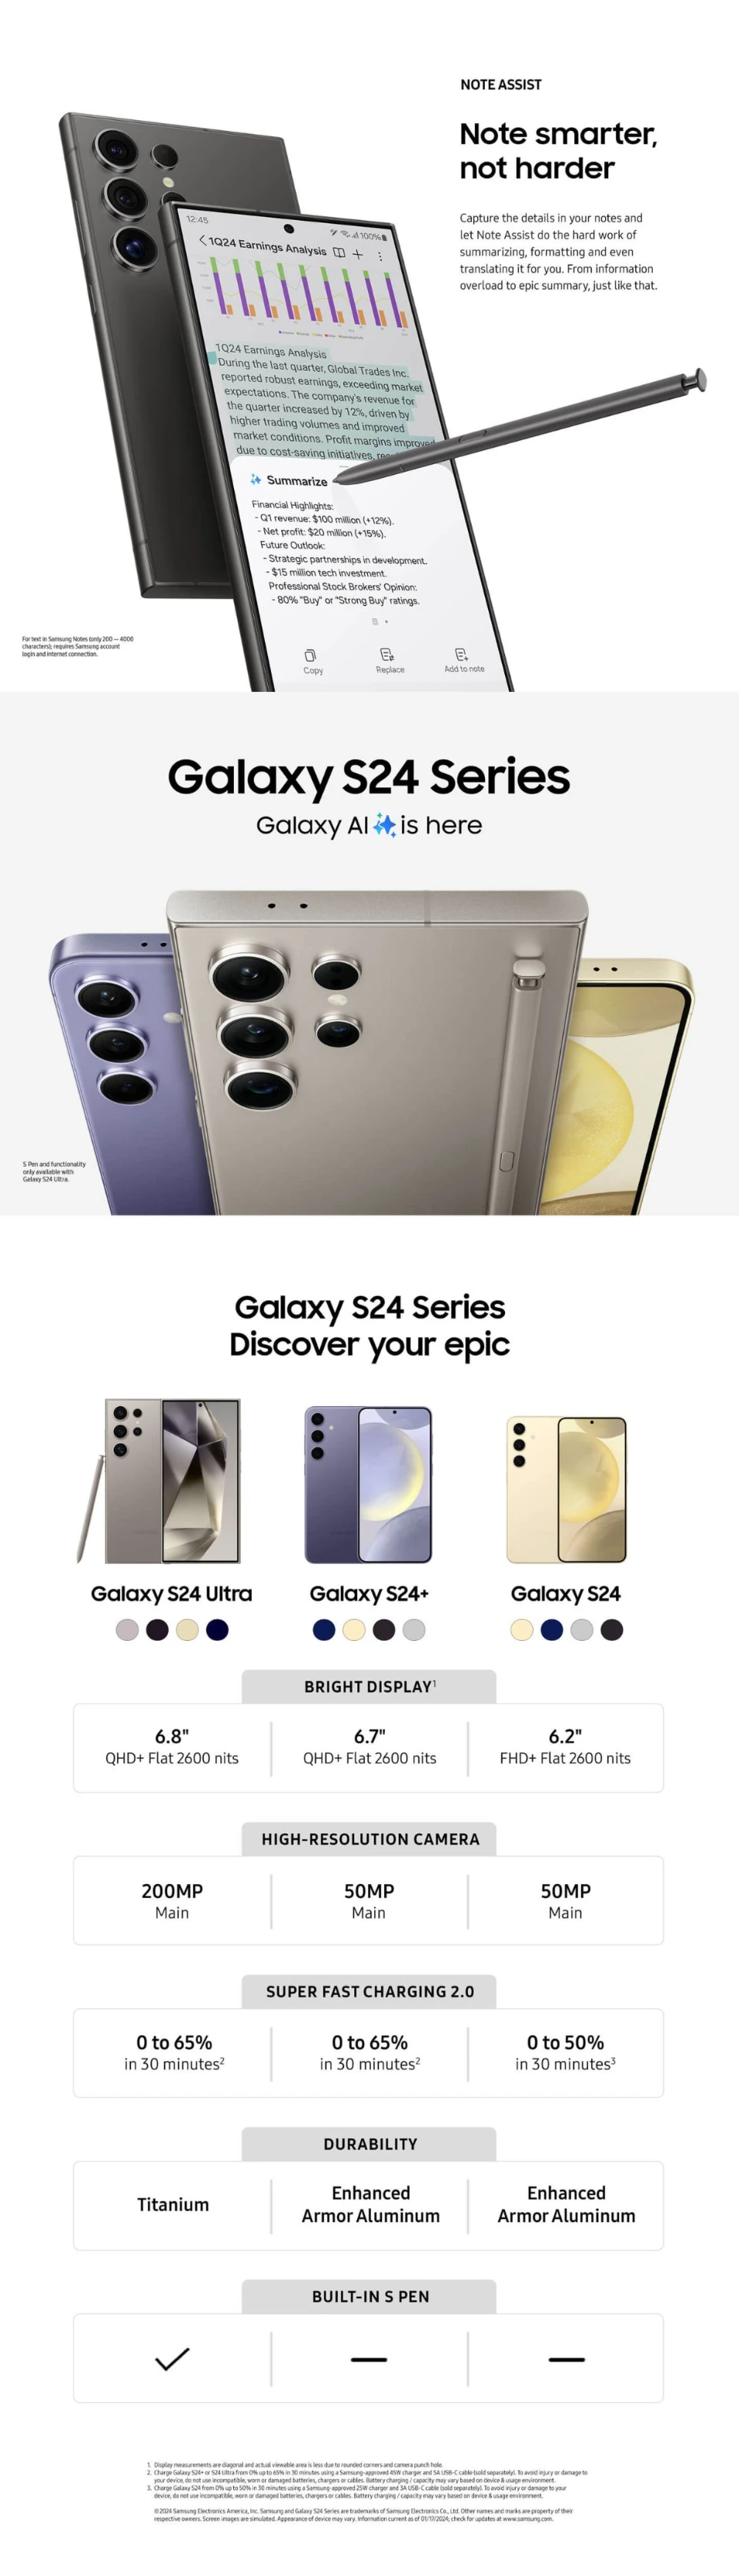 Hình ảnh tài liệu tiếp thị Galaxy S24 series được Evan Blass đăng tải trên X - Ảnh 3